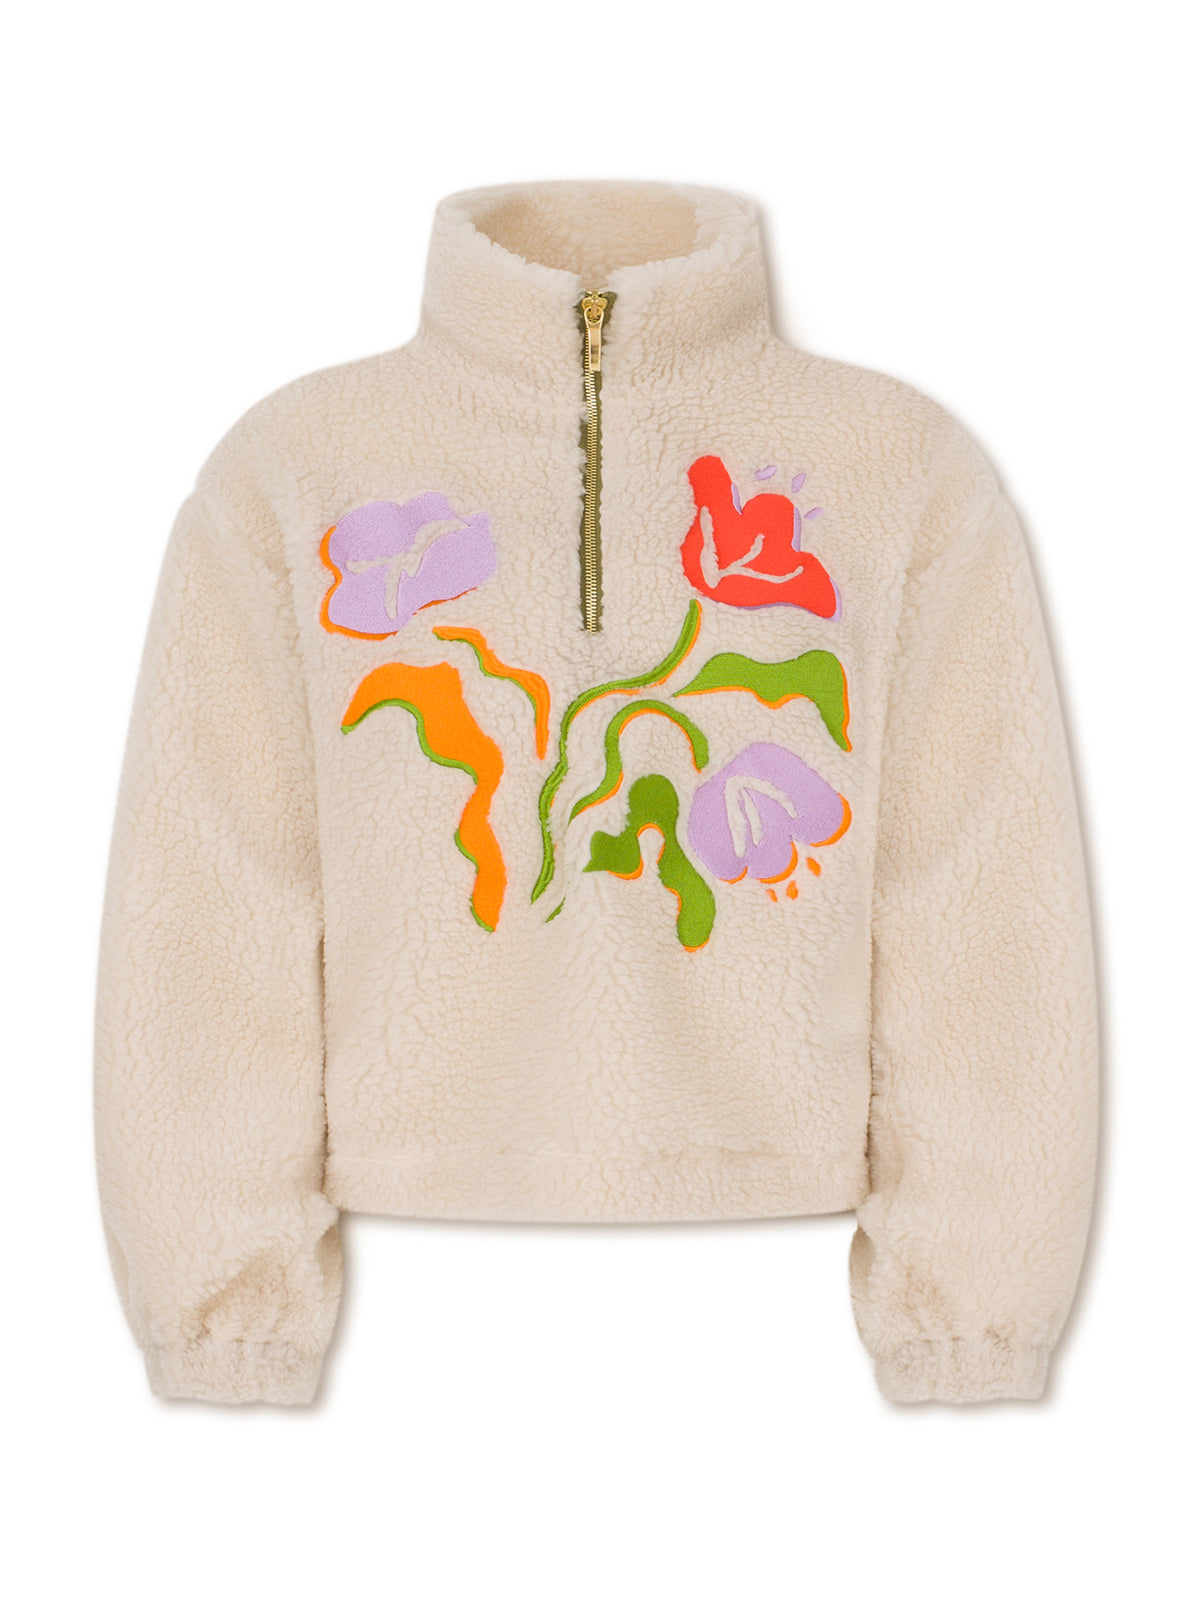 1967 eco fleece sweater